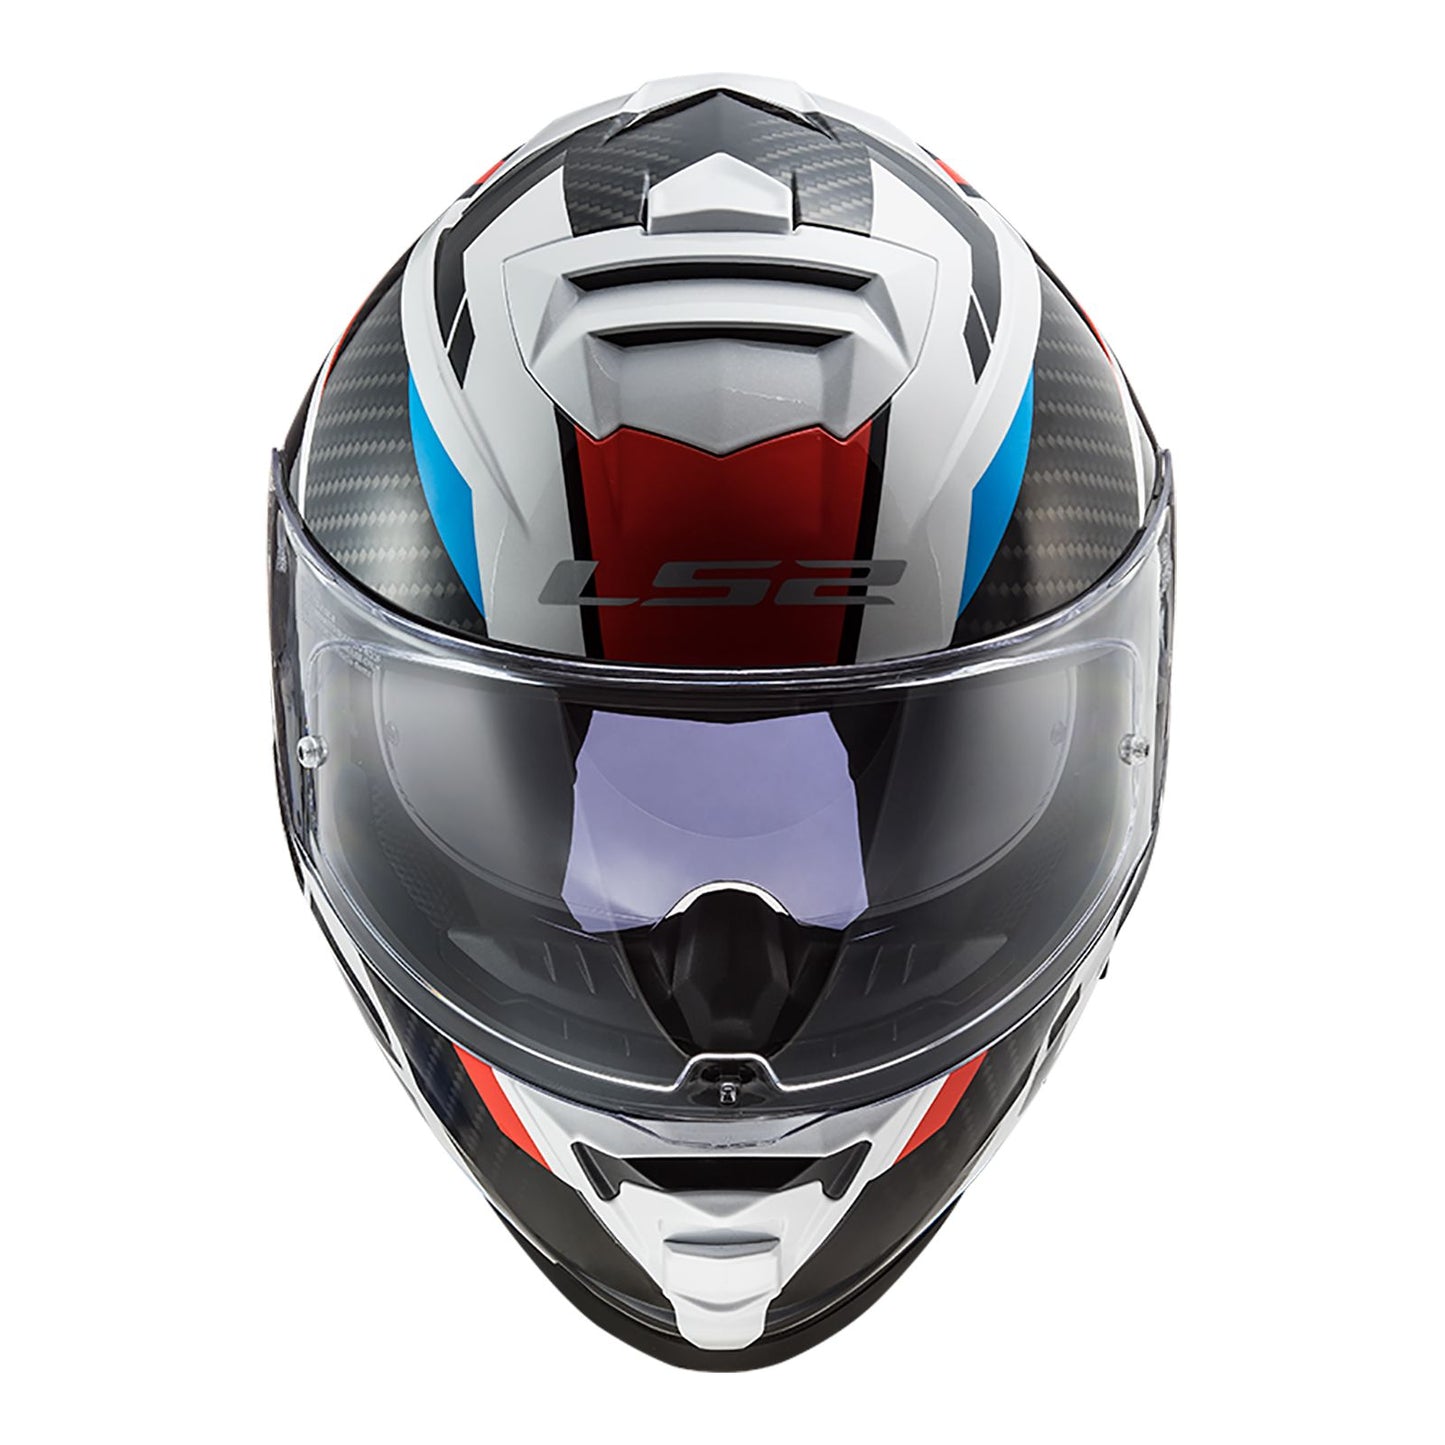 LS2 FF800 Storm Racer Wht/Blu/Red Helmet